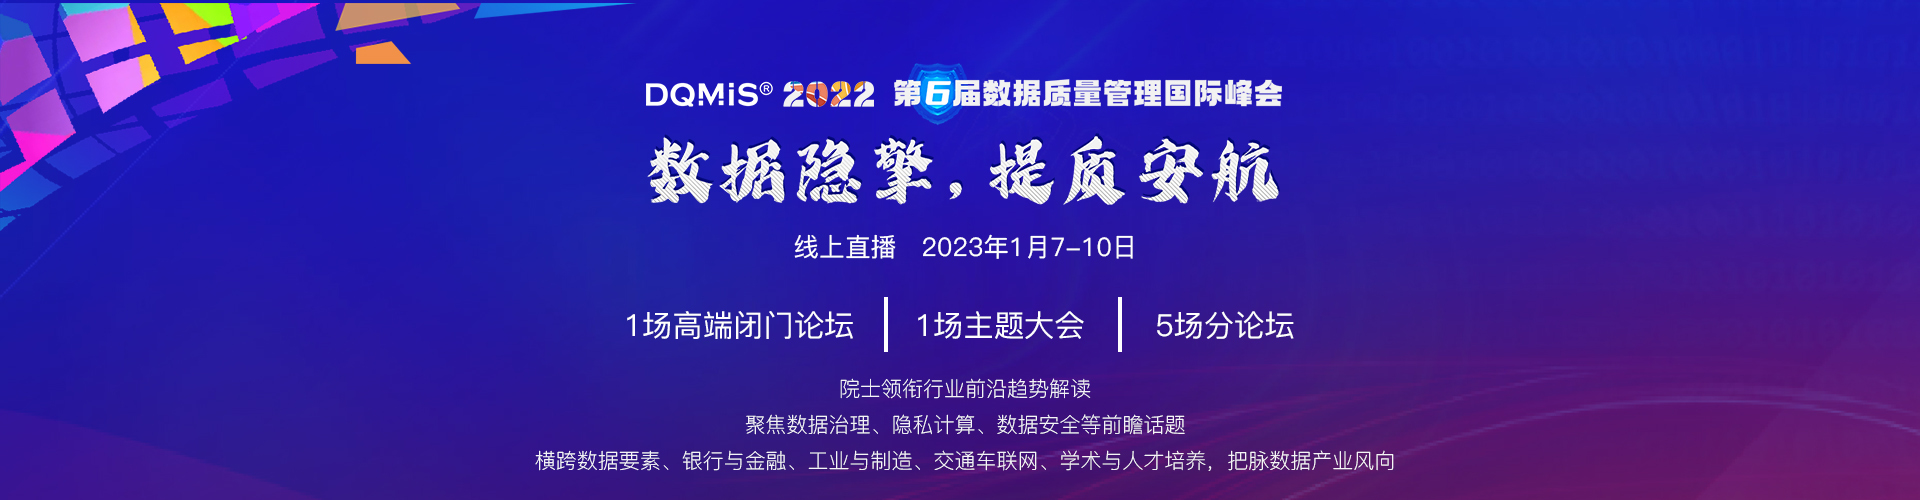 2022第六届数据质量管理国际峰会（DQMIS 2022）